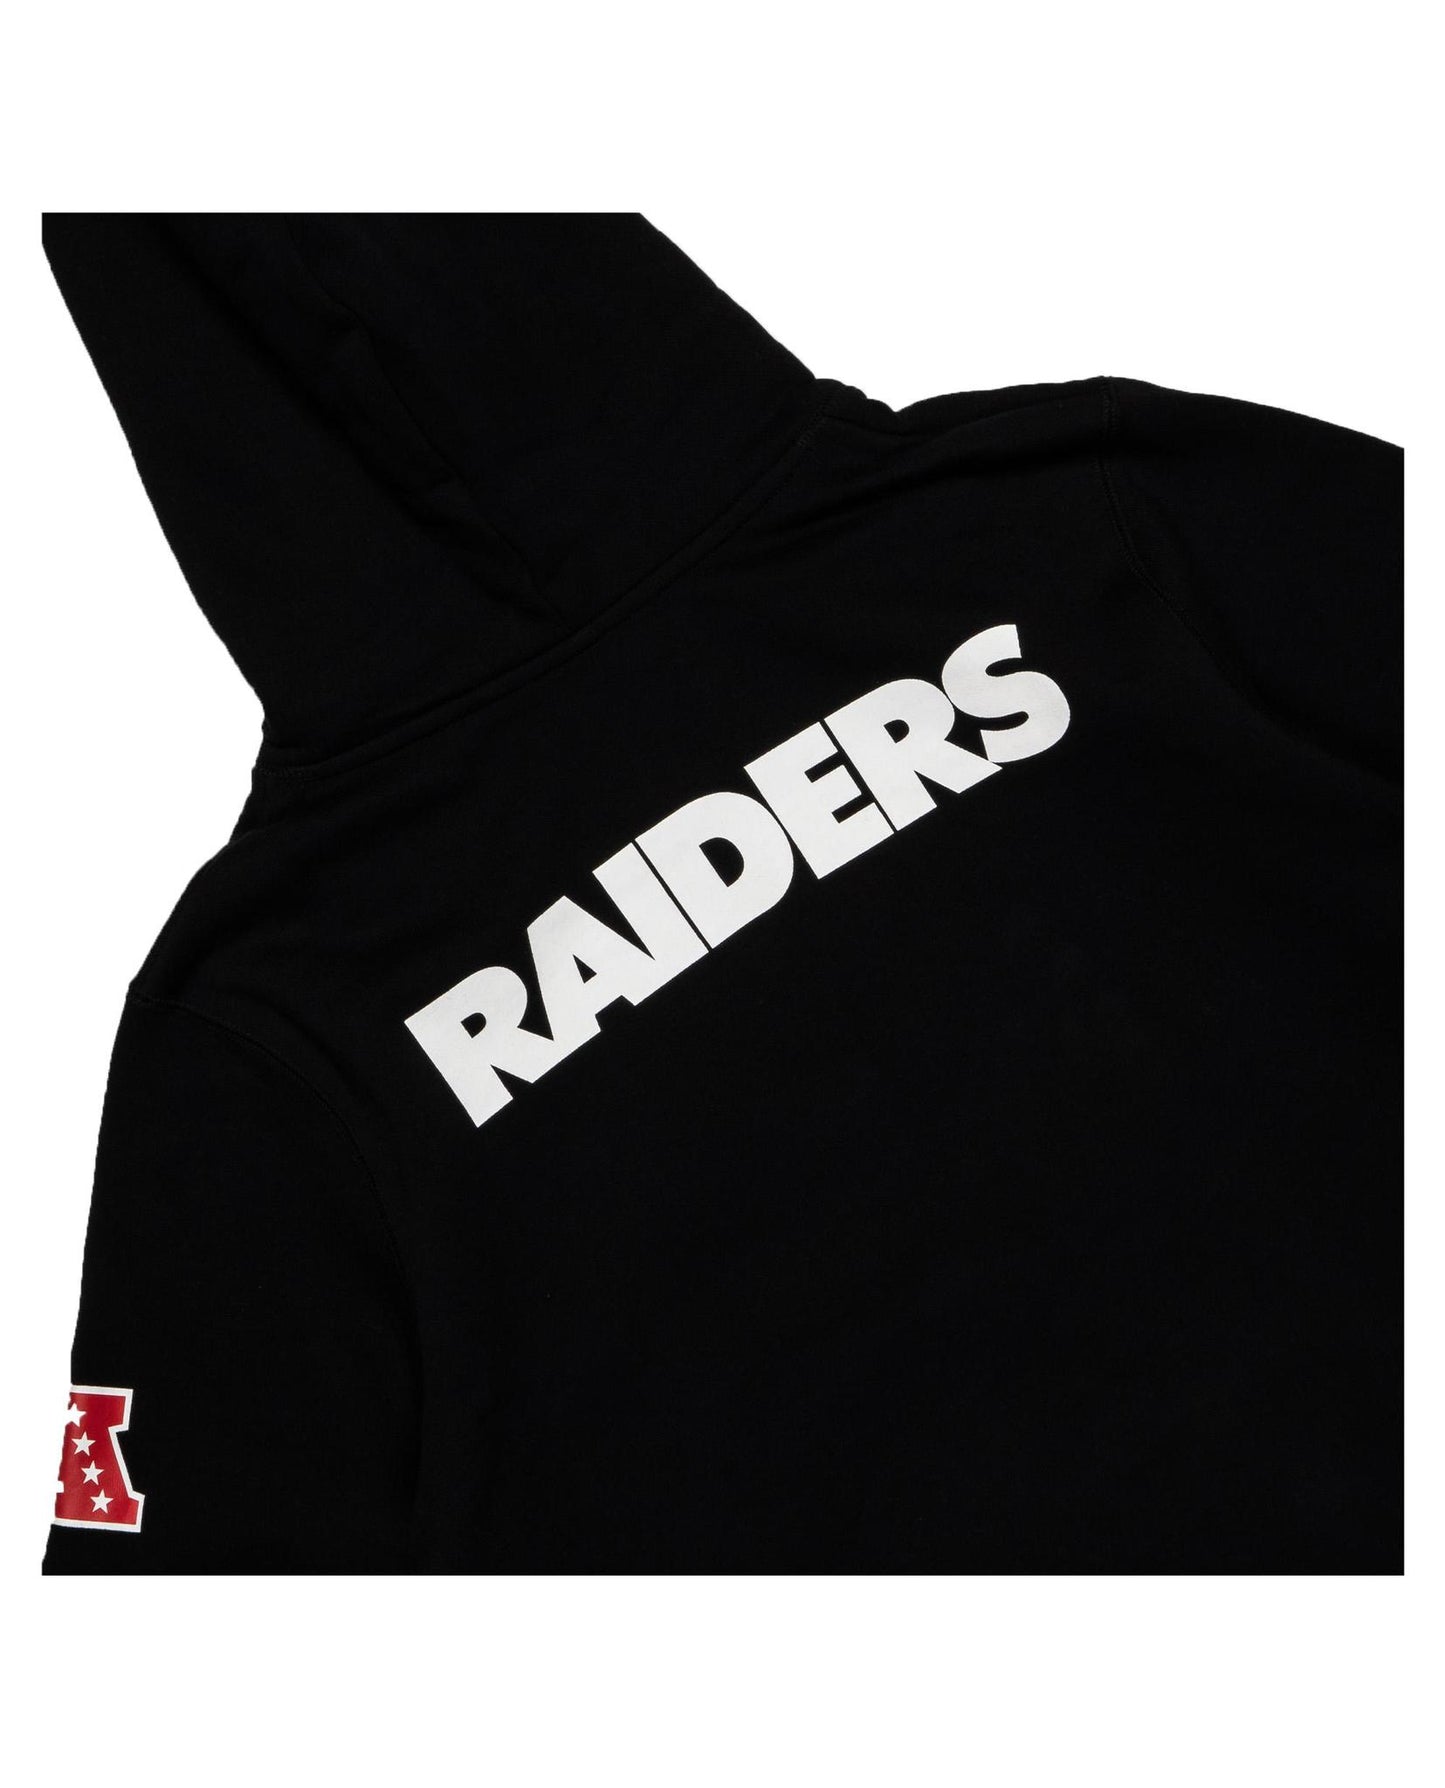 raiders sleeveless hoodie